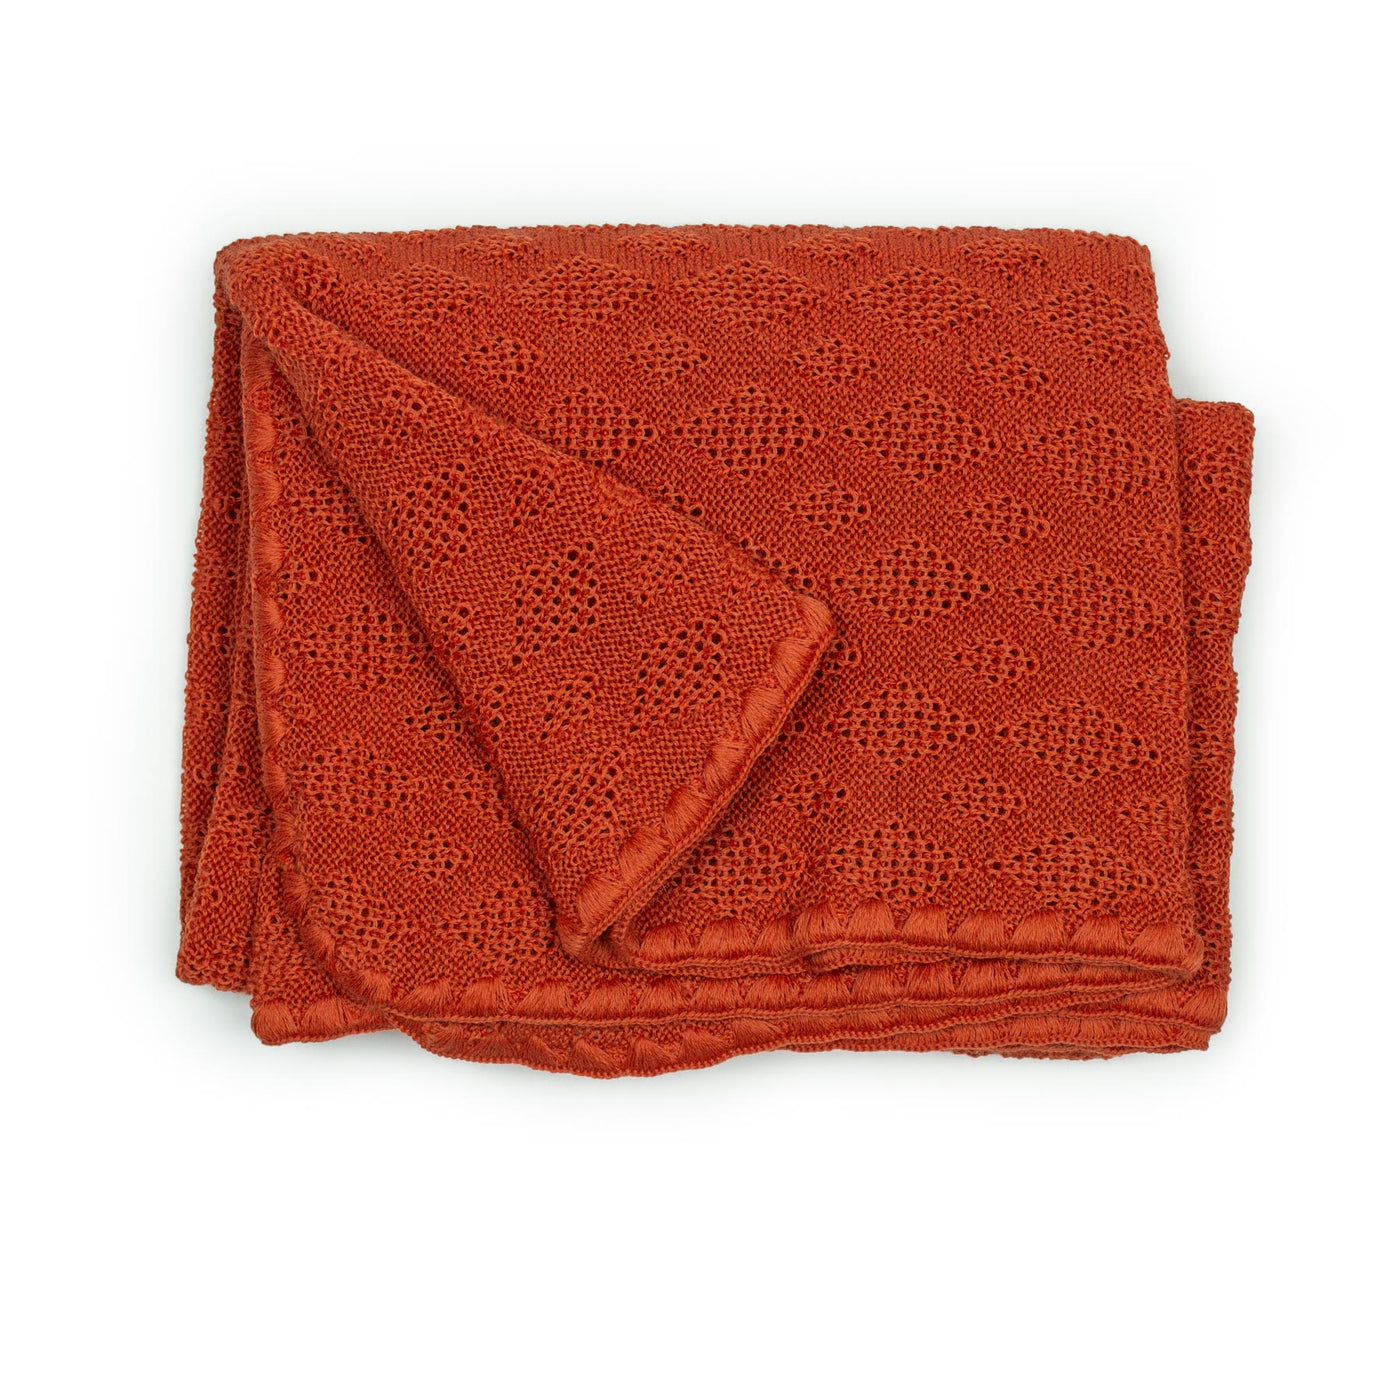 Disana knit wool baby blanket orange